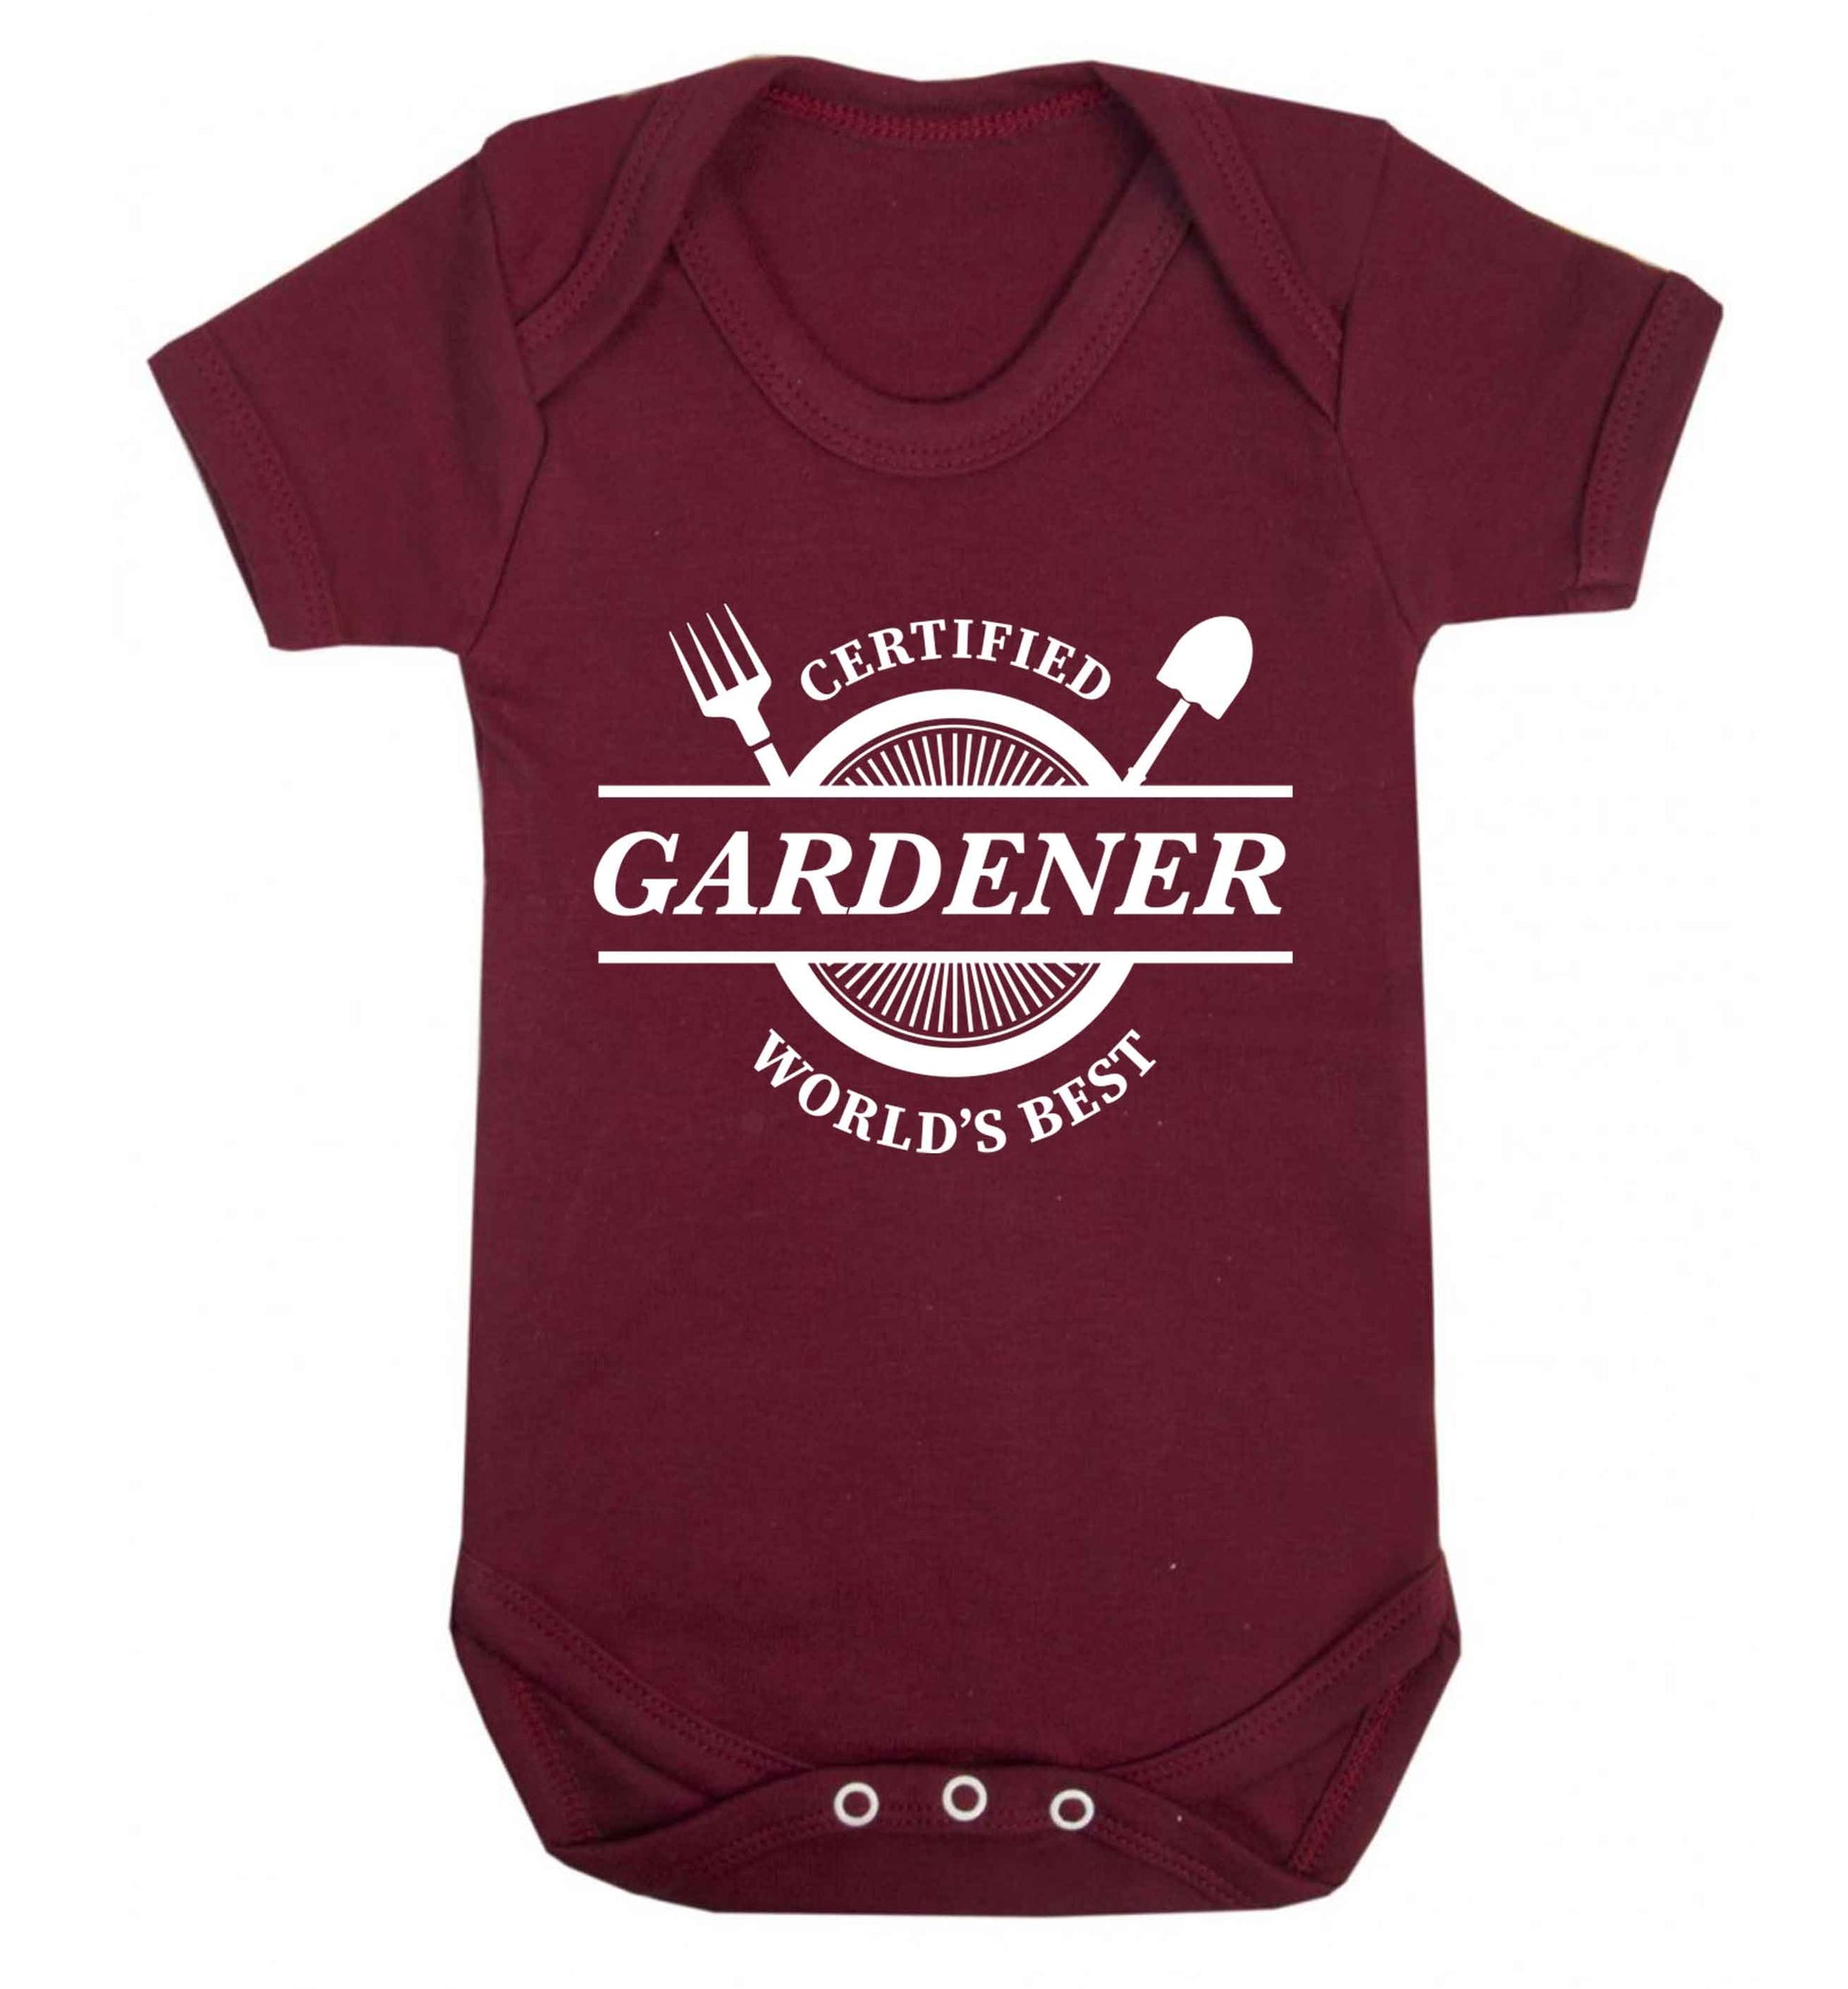 Certified gardener worlds best Baby Vest maroon 18-24 months